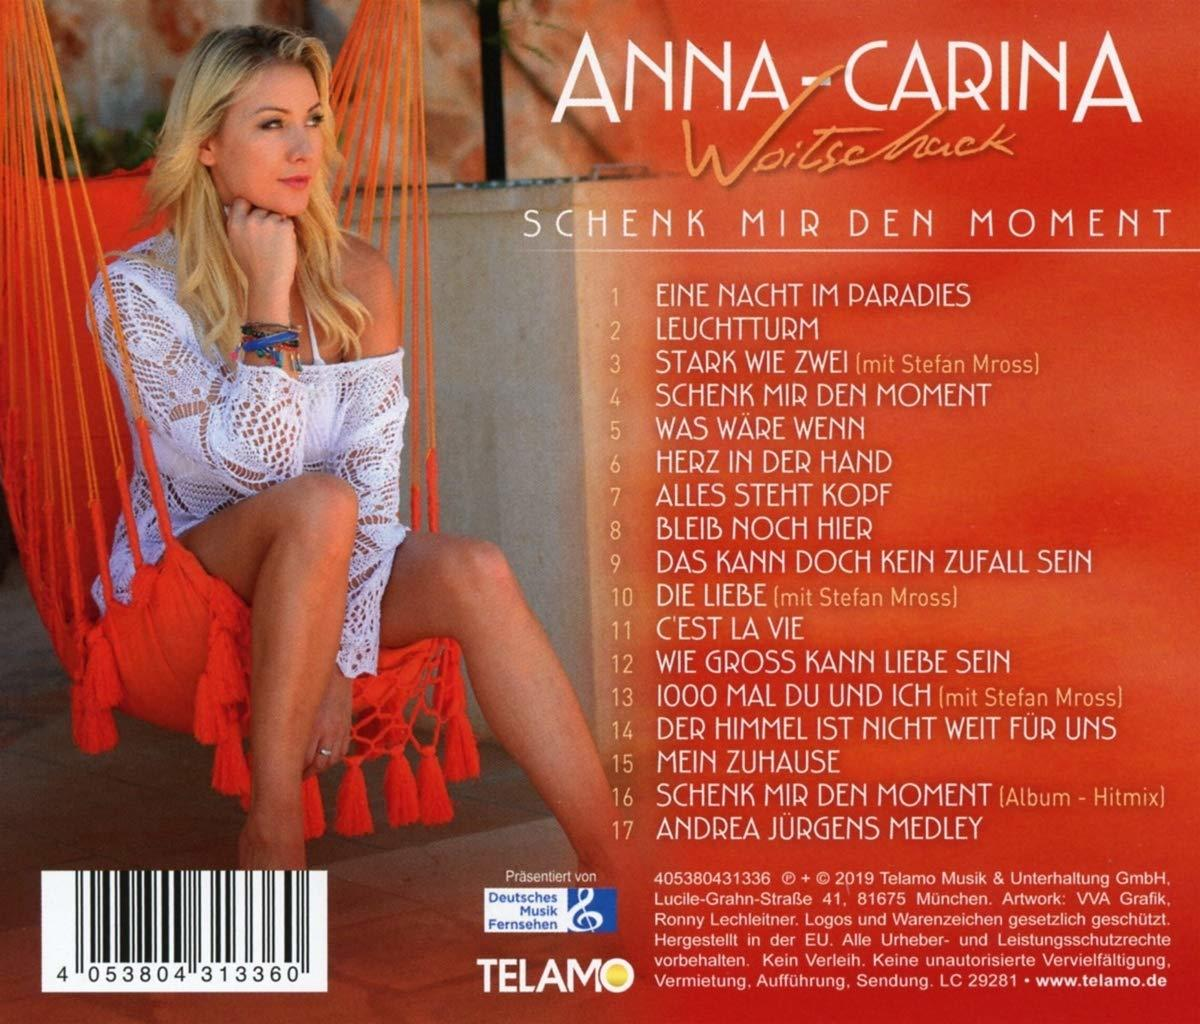 den Woitschack - (CD) Anna-Carina Schenk mir - Moment